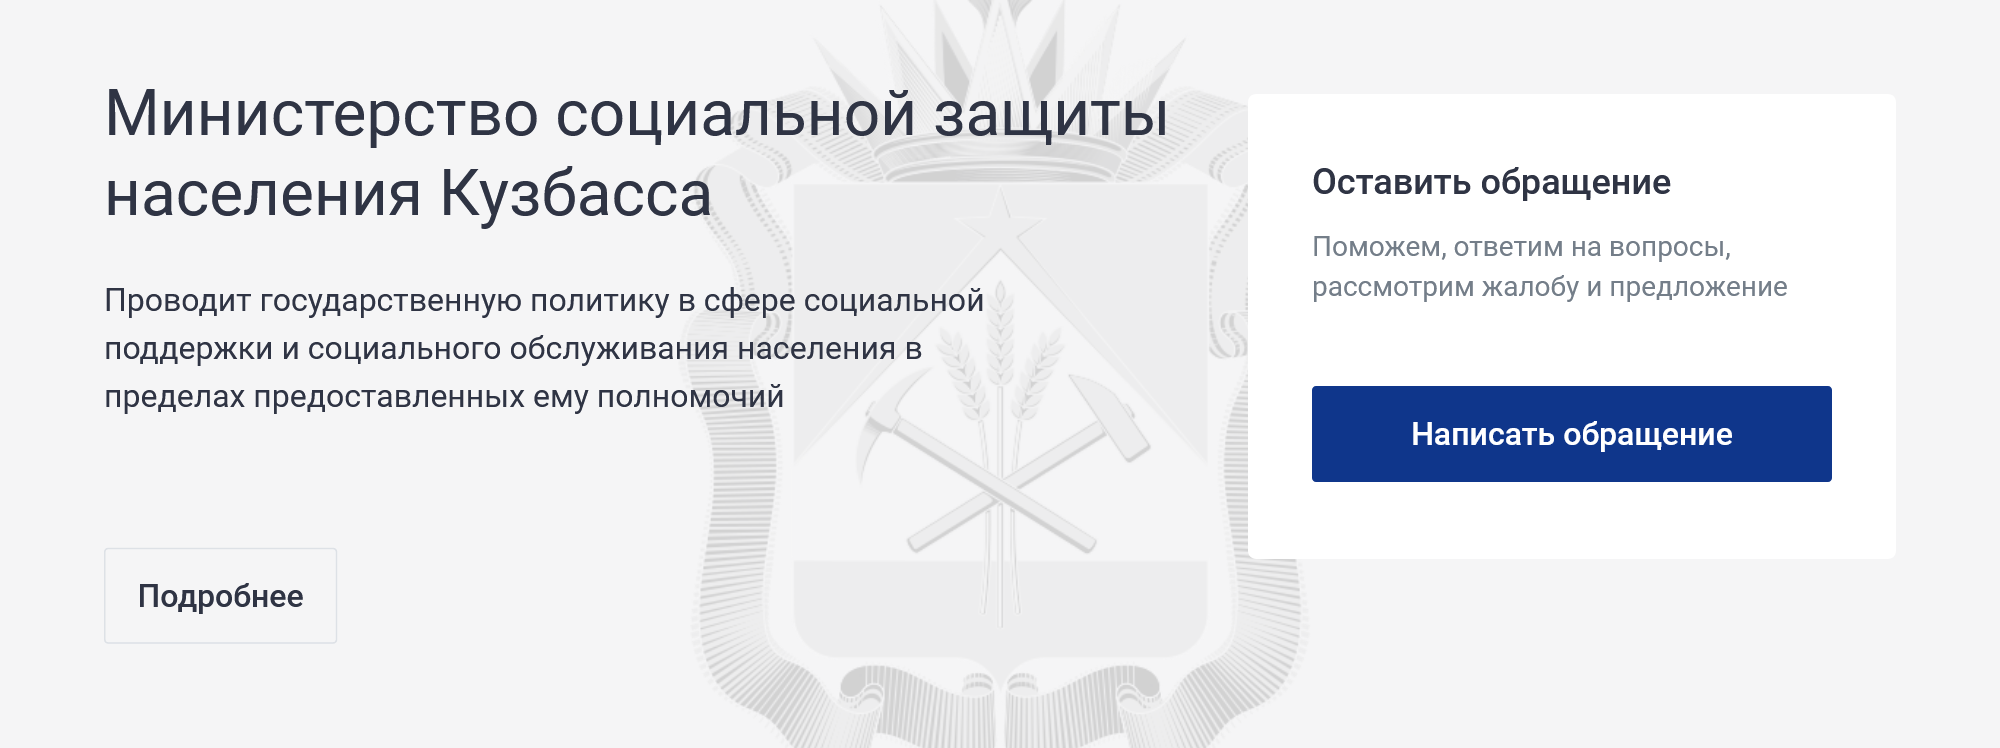 Кнопка для отправки обращения находится на главной странице сайта соцзащиты Кузбасса